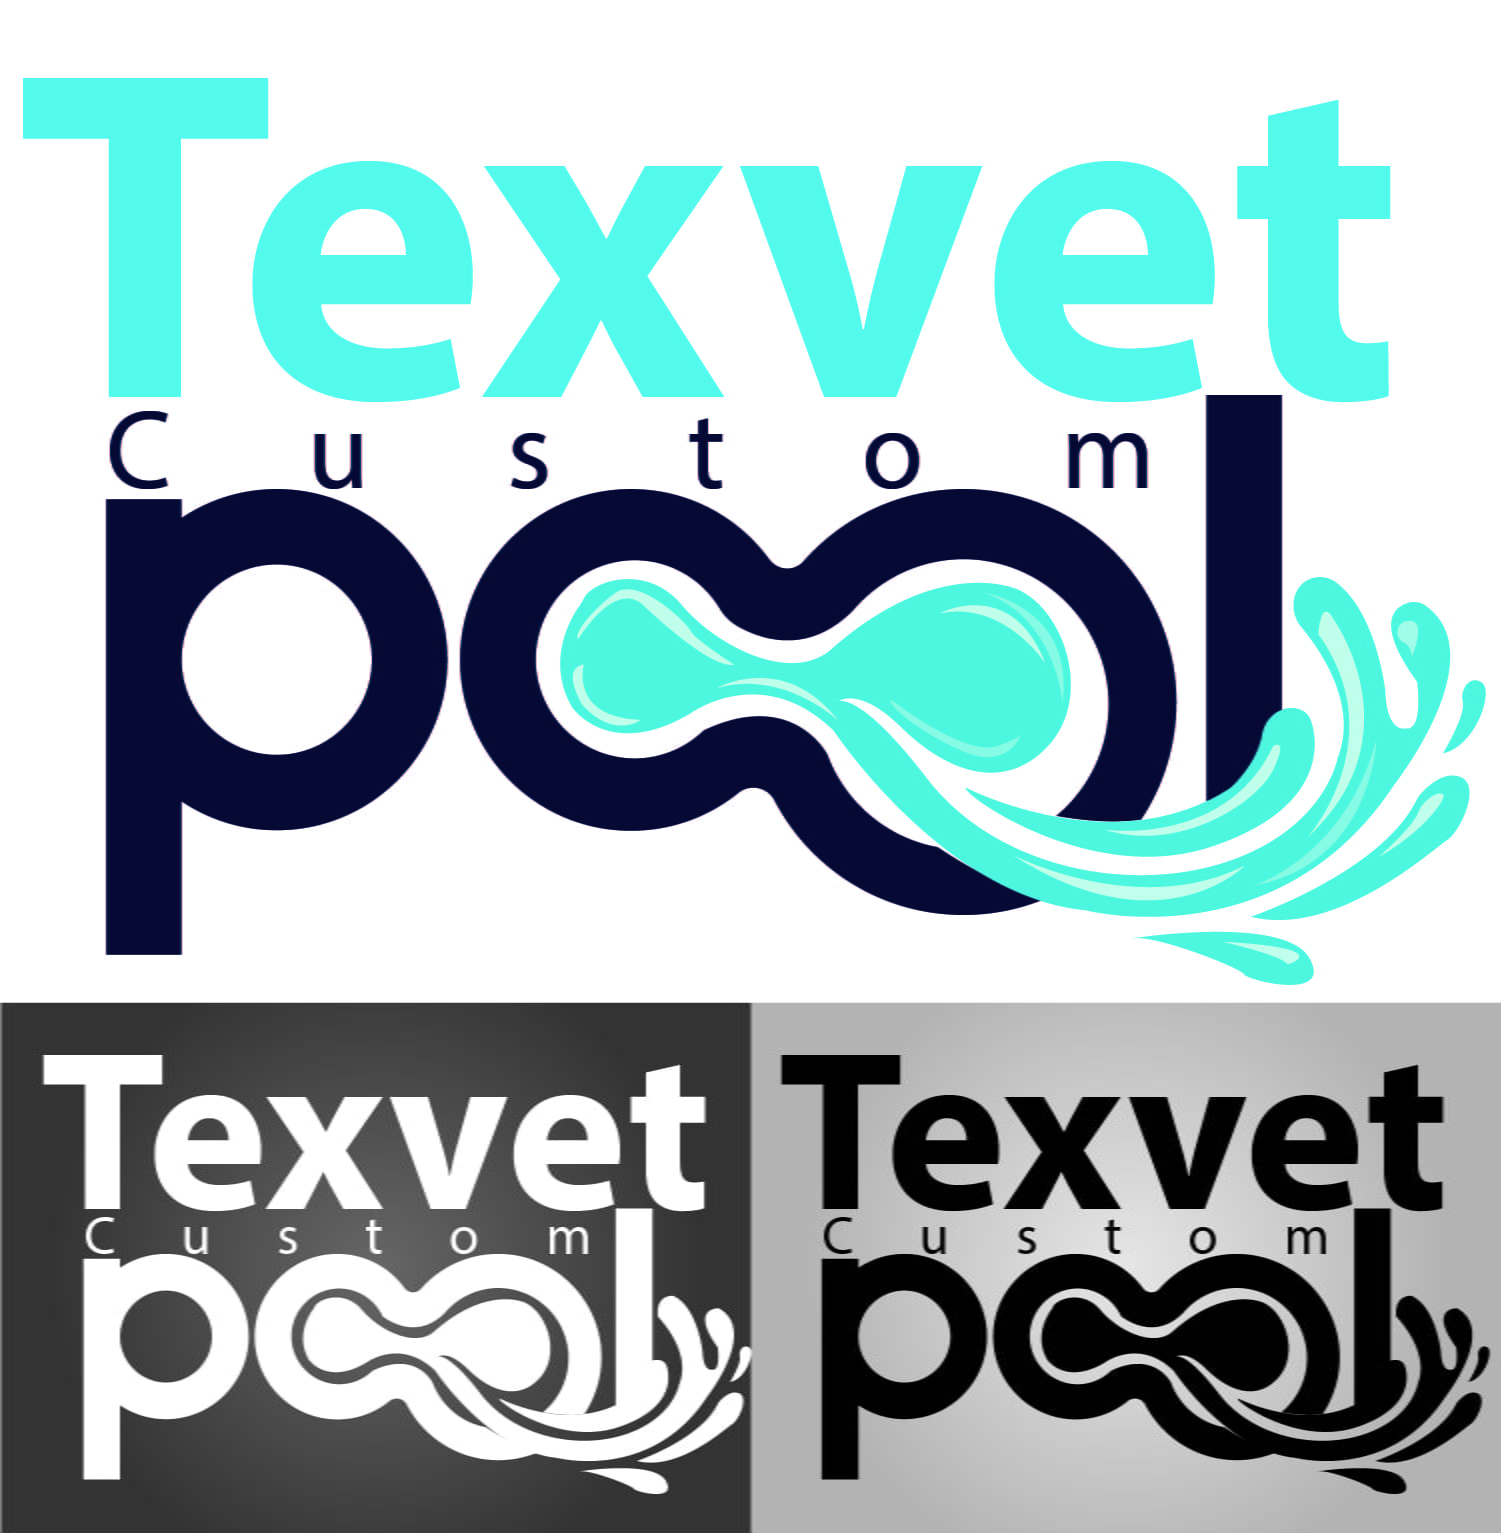 Texvet Custom Pools